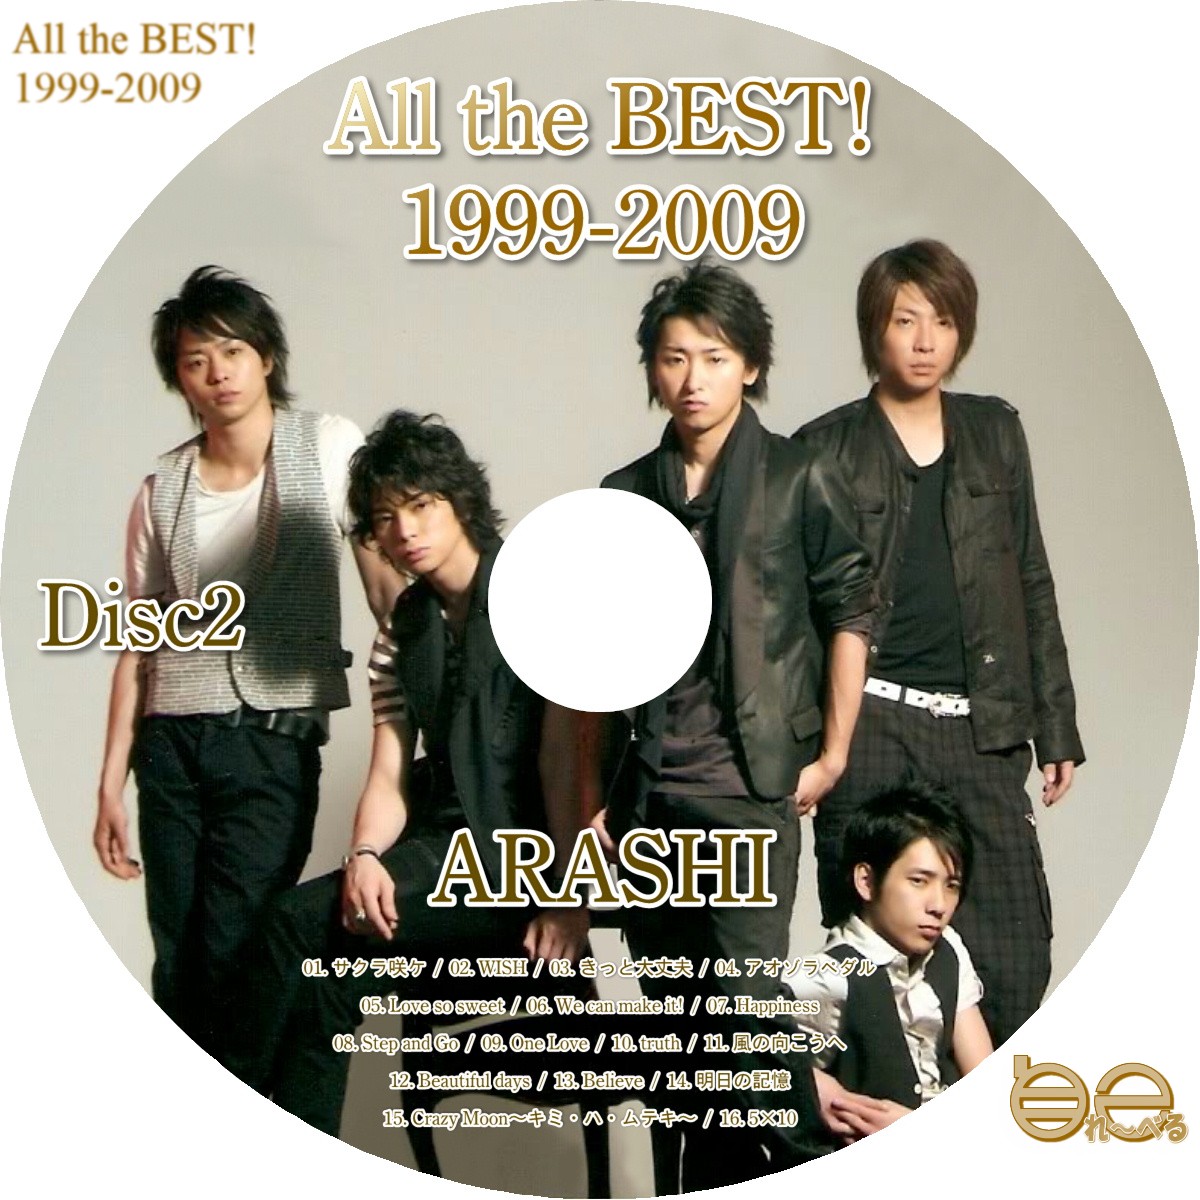 自己れ～べる - 嵐 - All the BEST! 1999-2009